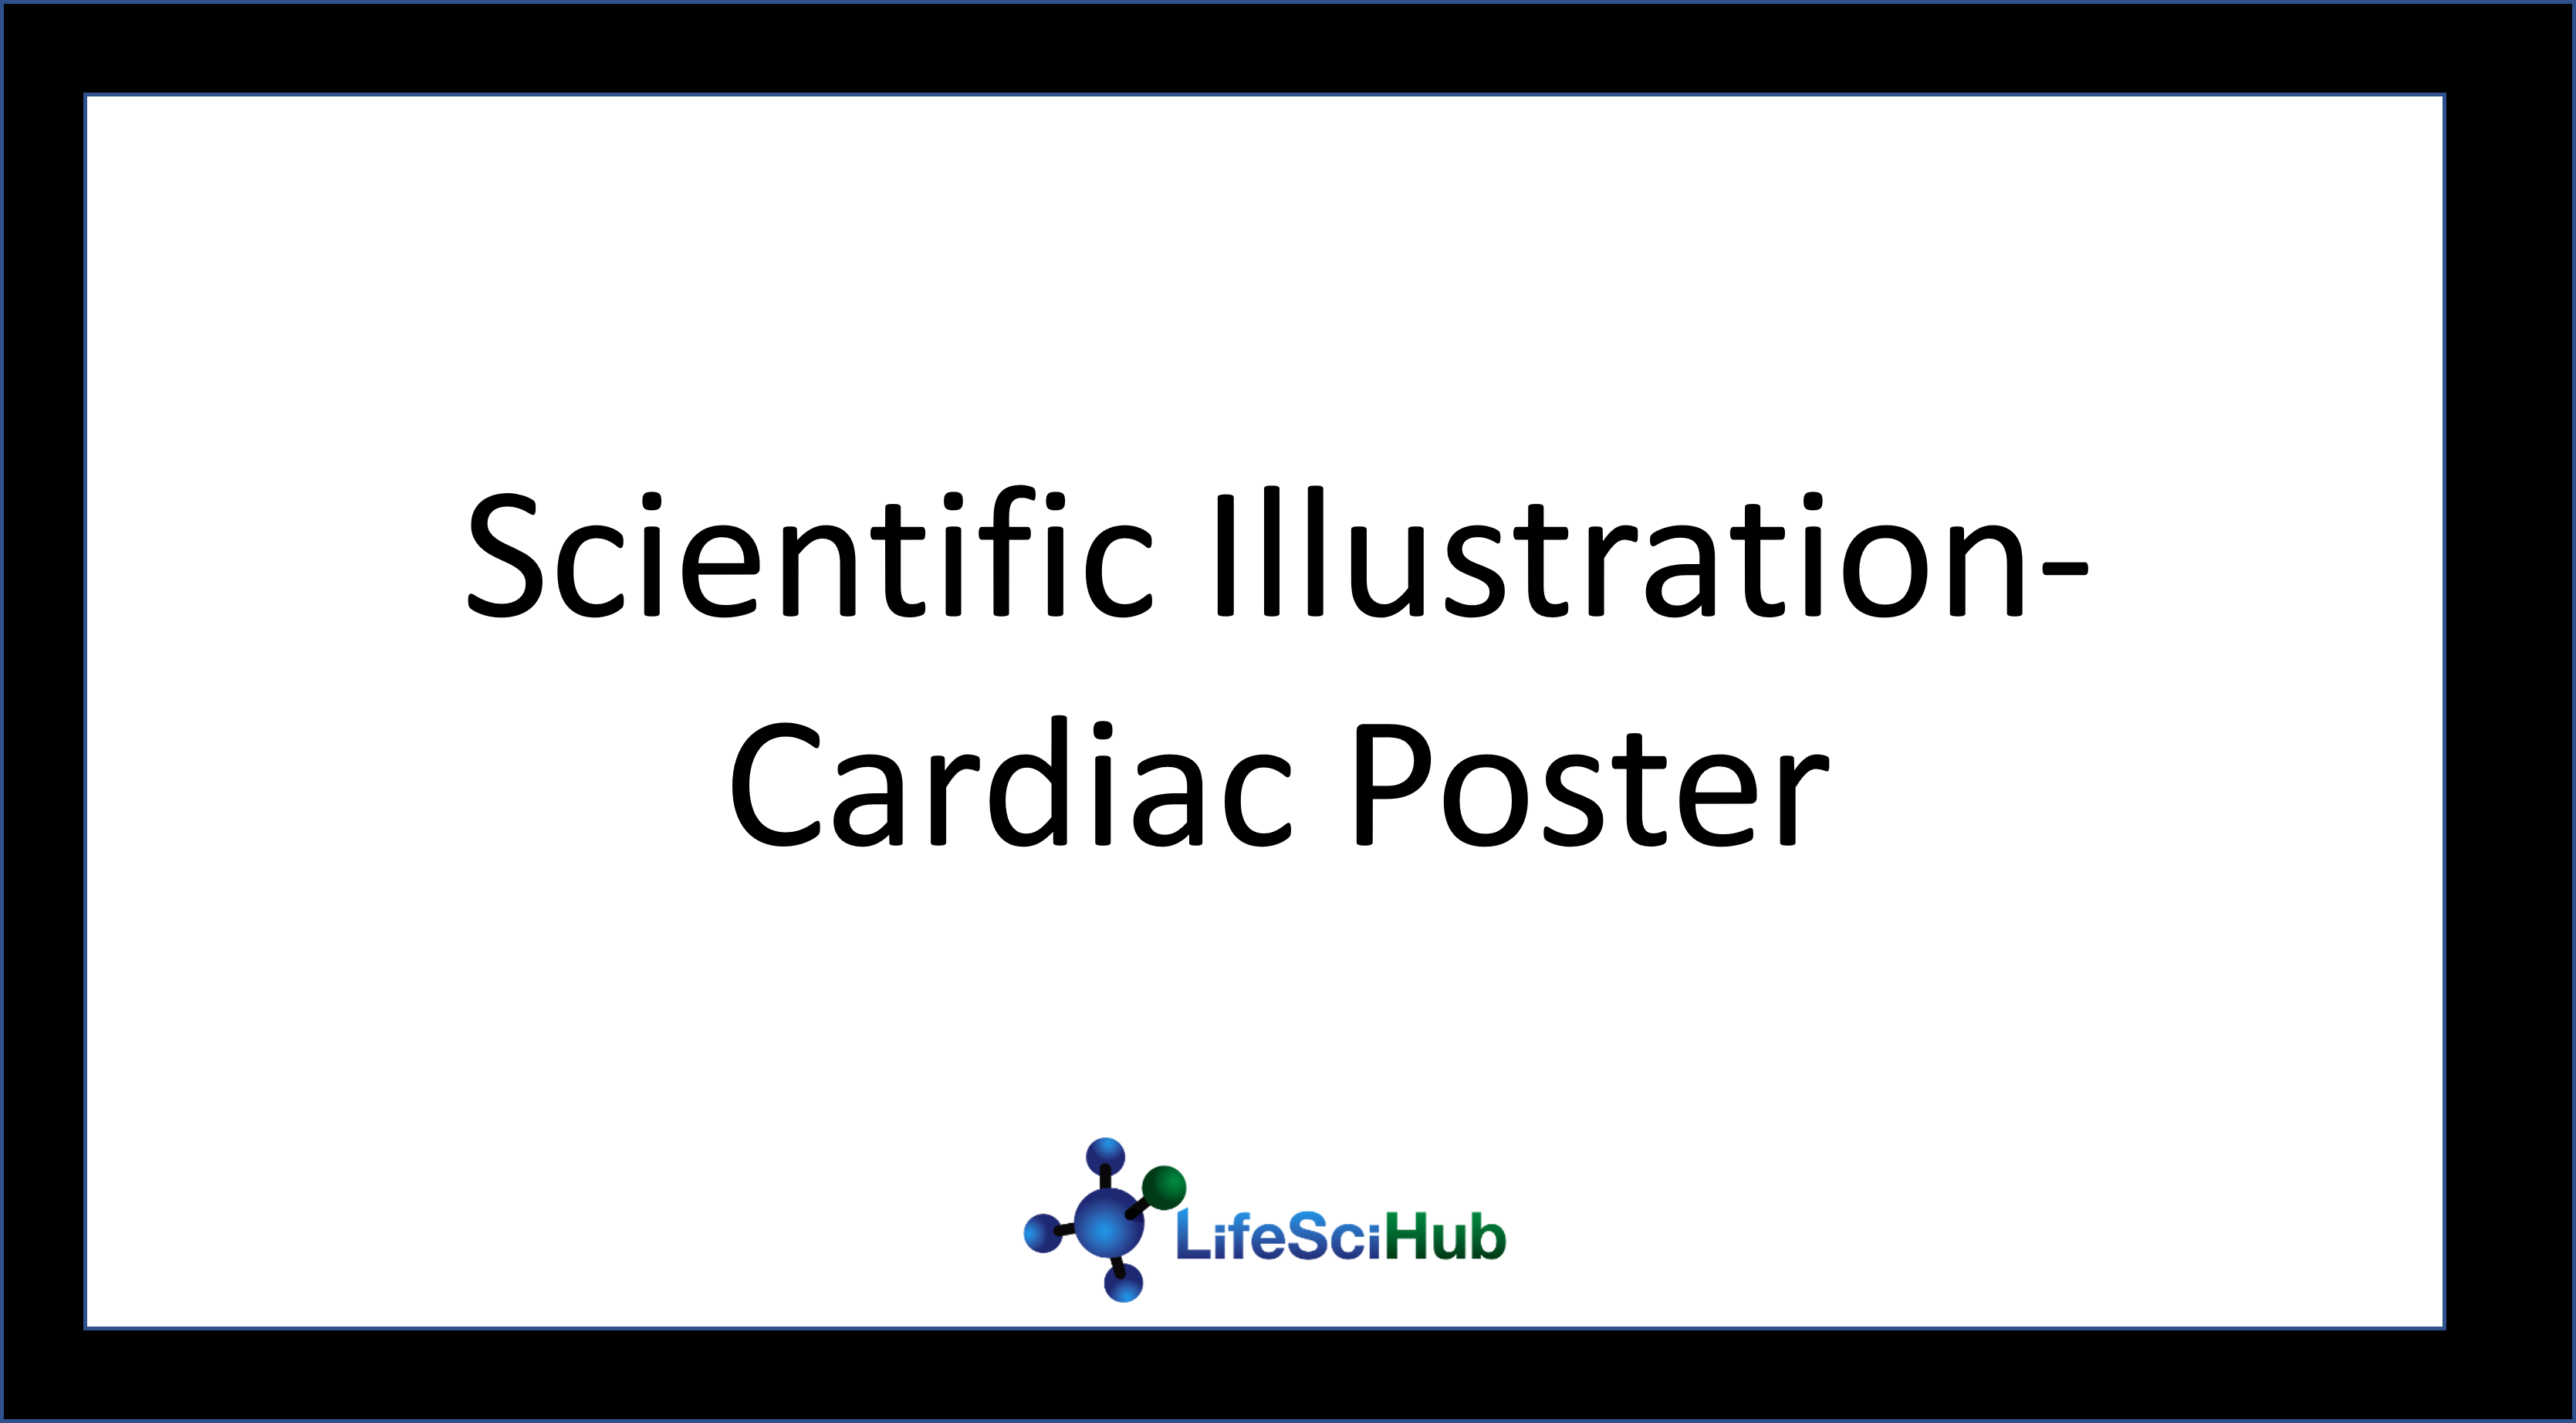 Scientific Illustrator- Cardiac Poster Submission